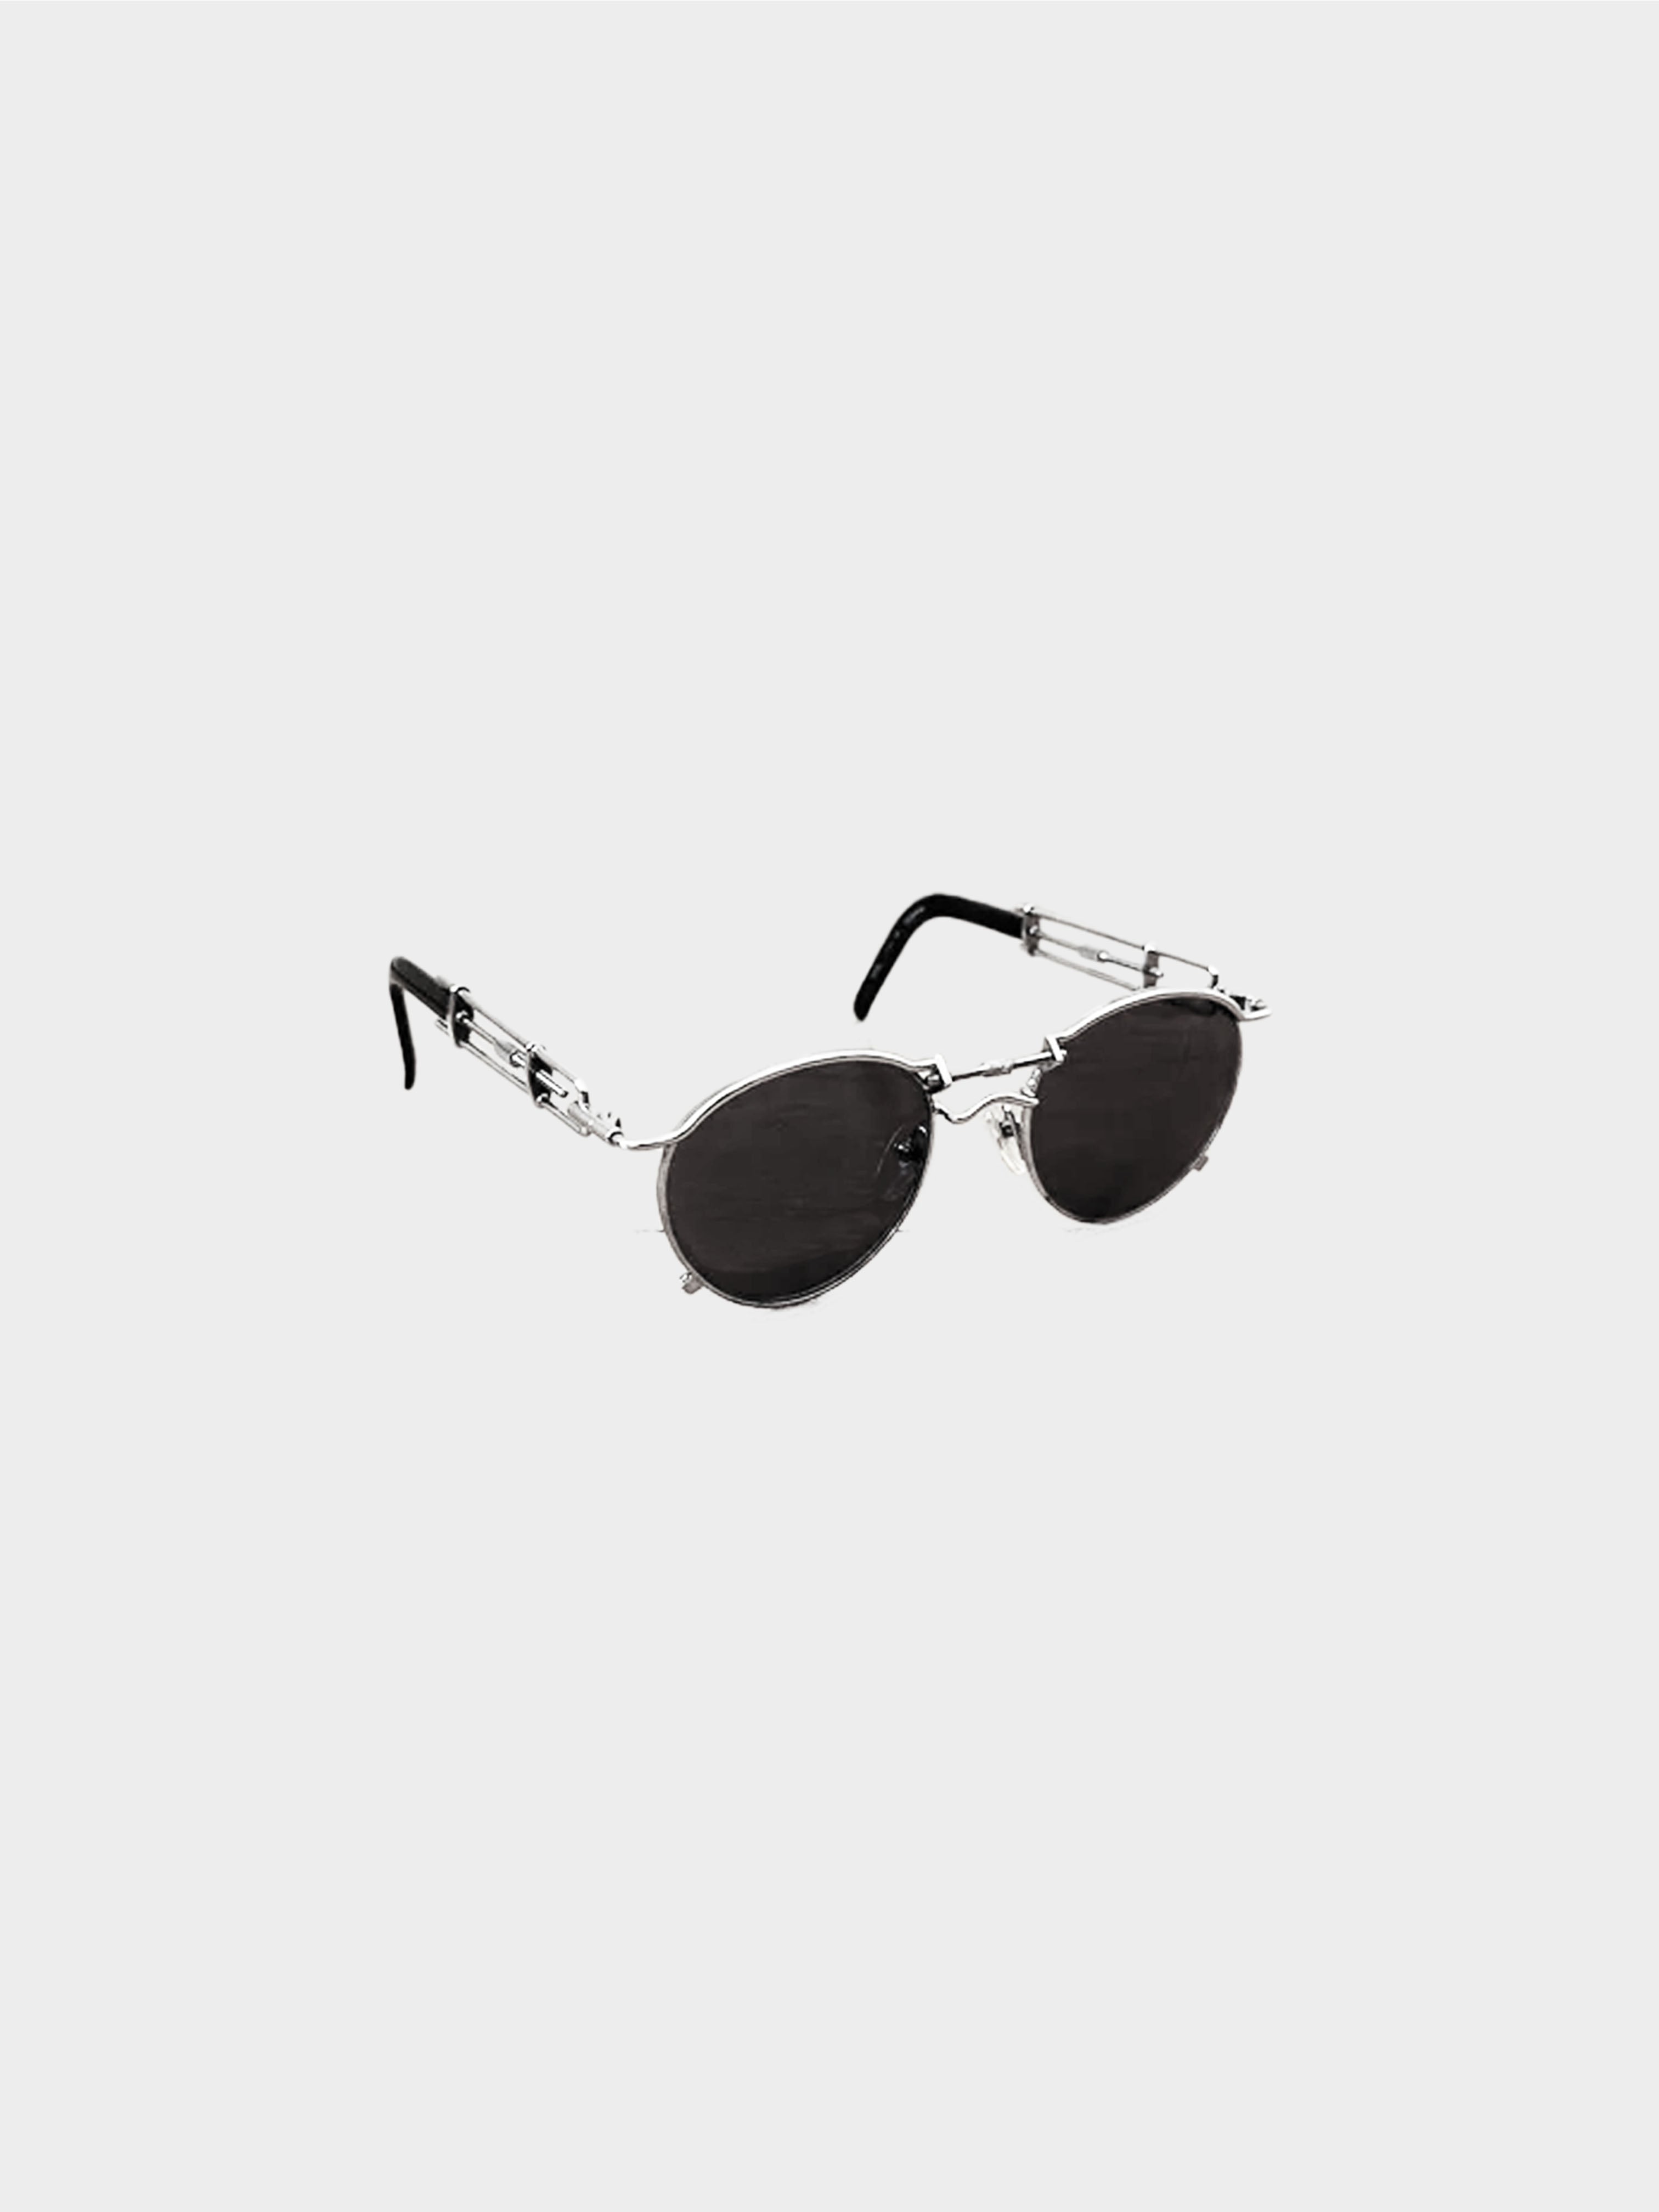 Jean Paul Gaultier 1990s Screw Sunglasses